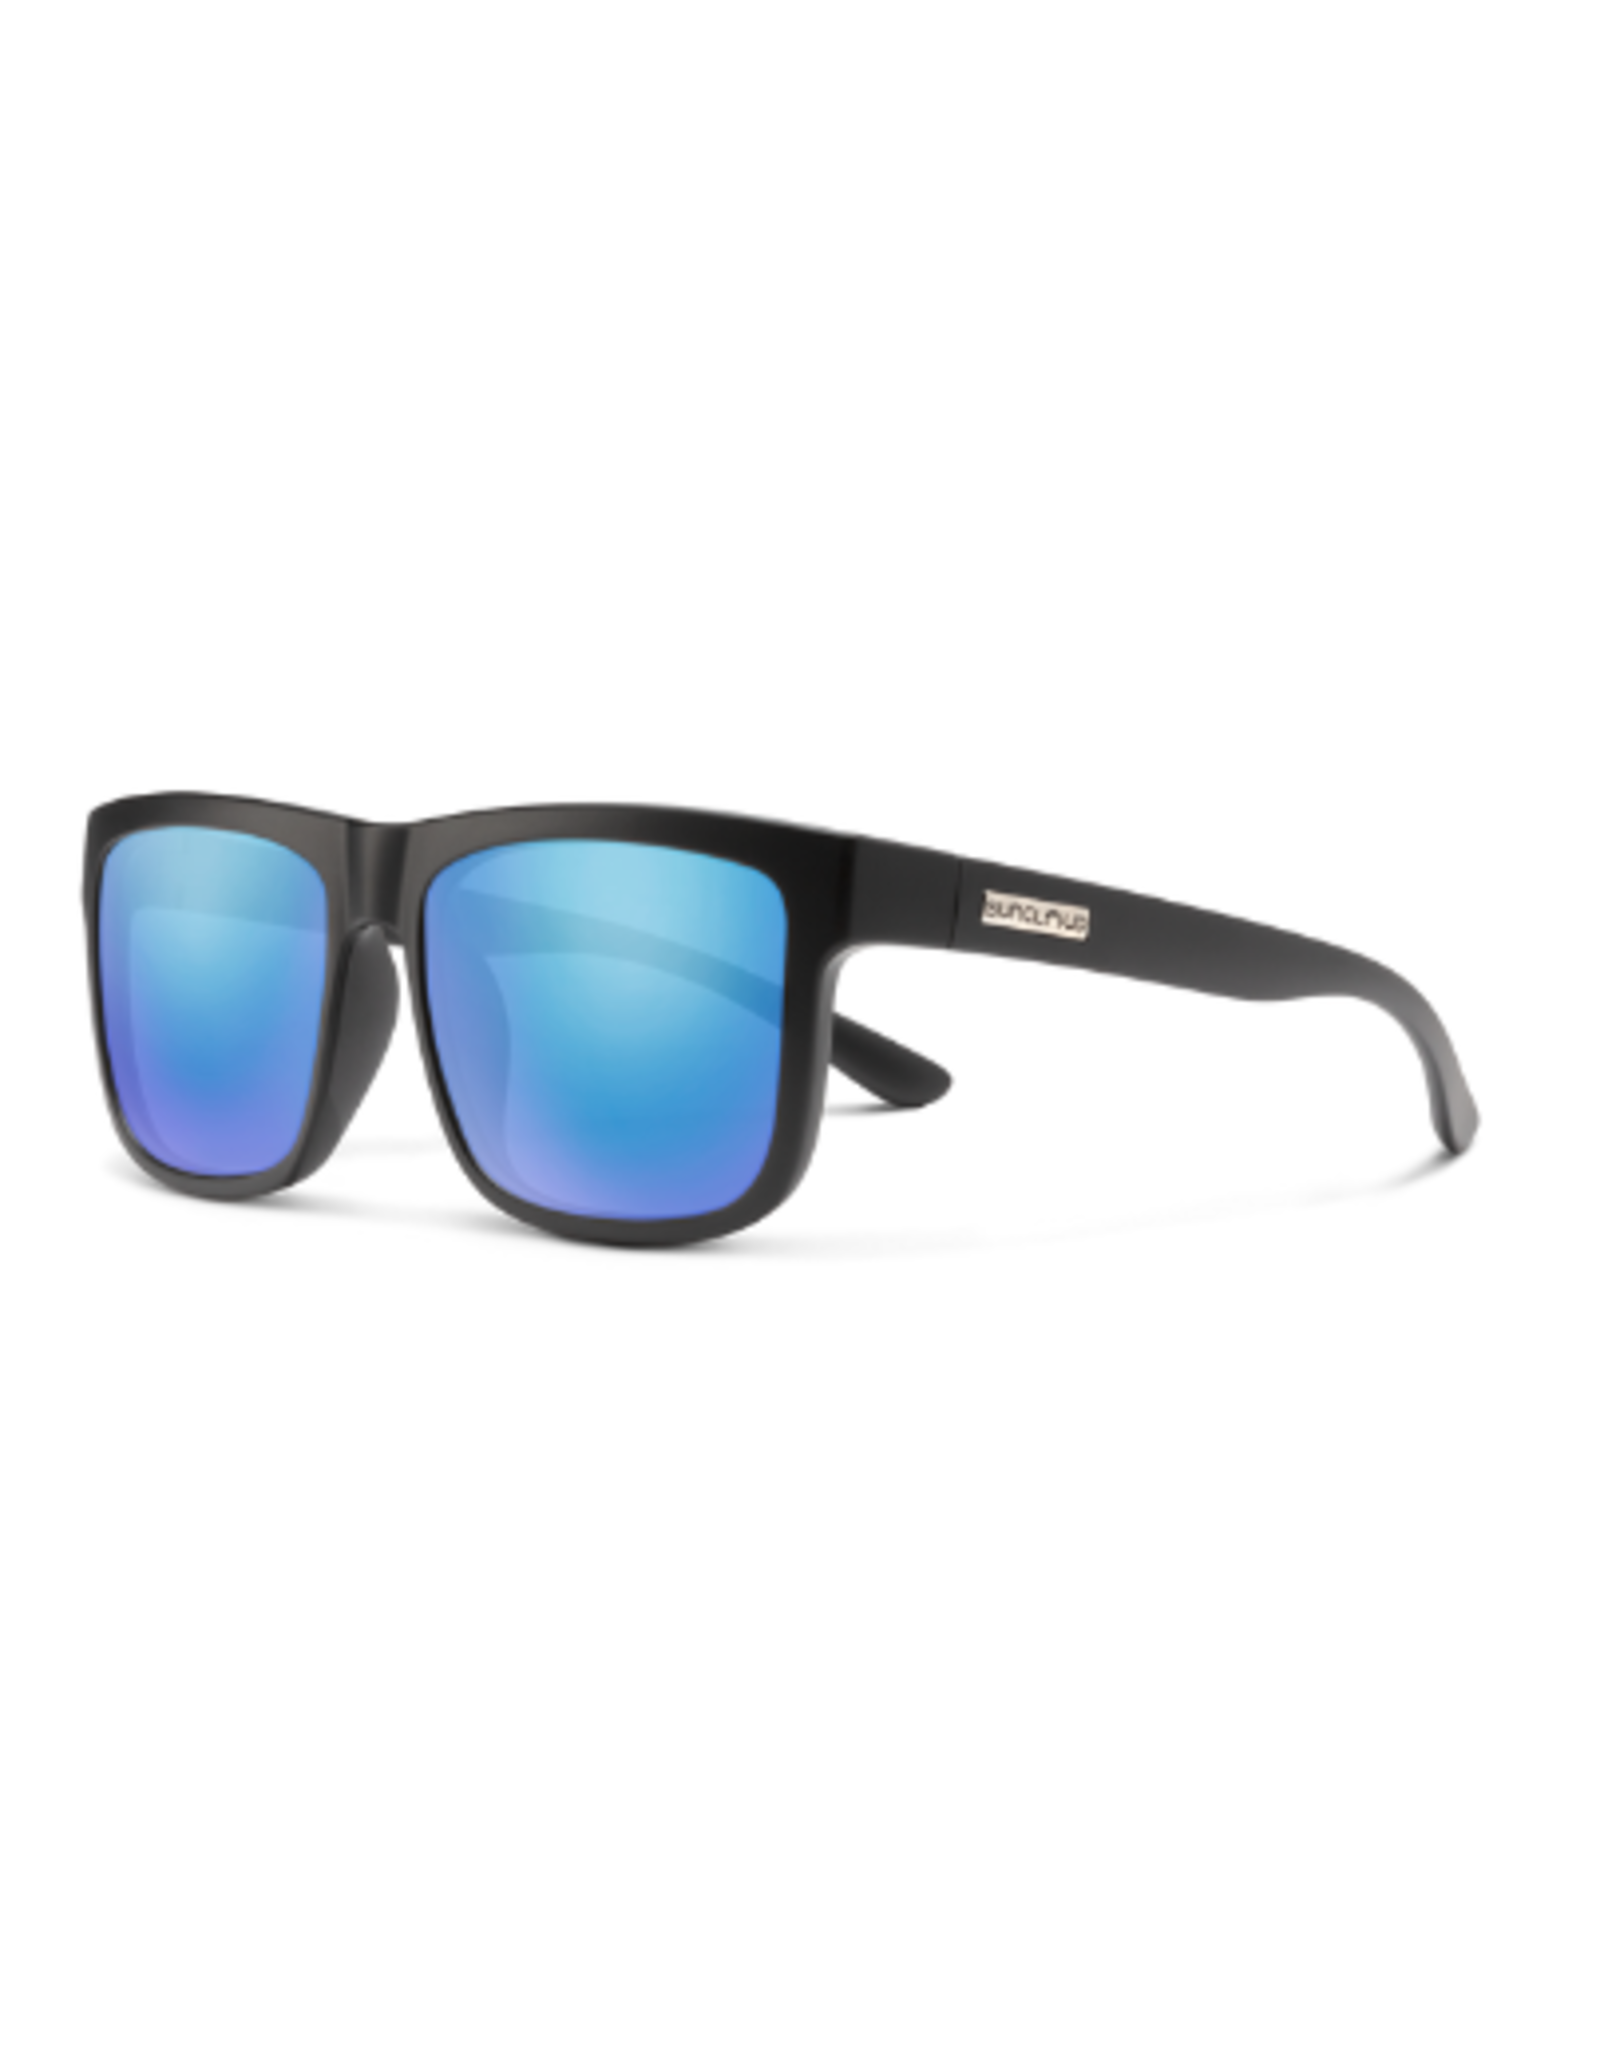 SunCloud Quiver $54.95 Select Color: Matte Black + Polarized Blue Mirror Lens